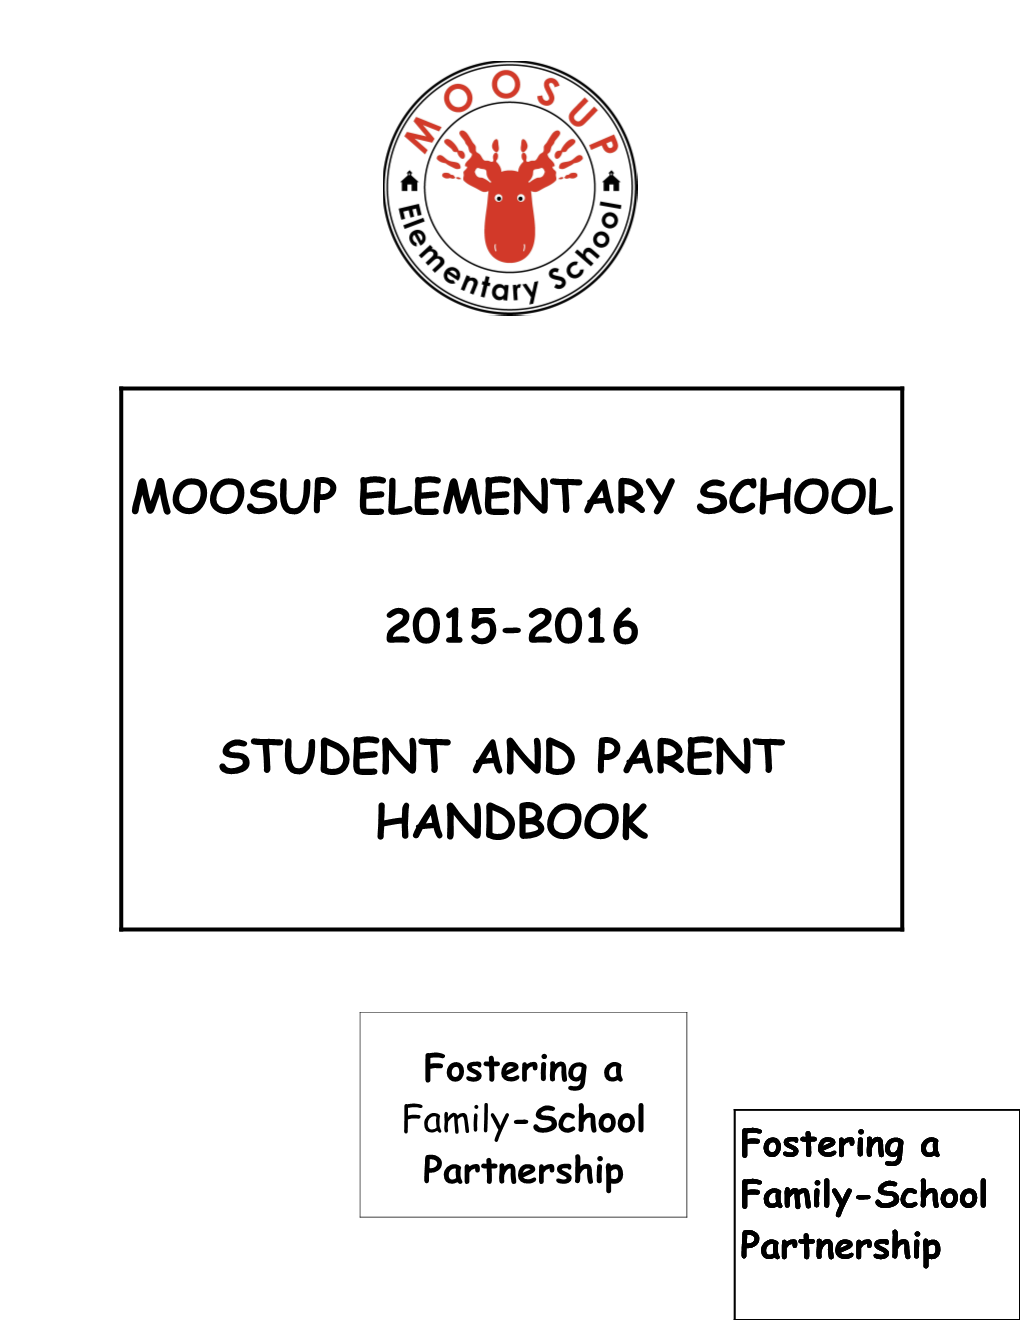 Moosup Elementary School